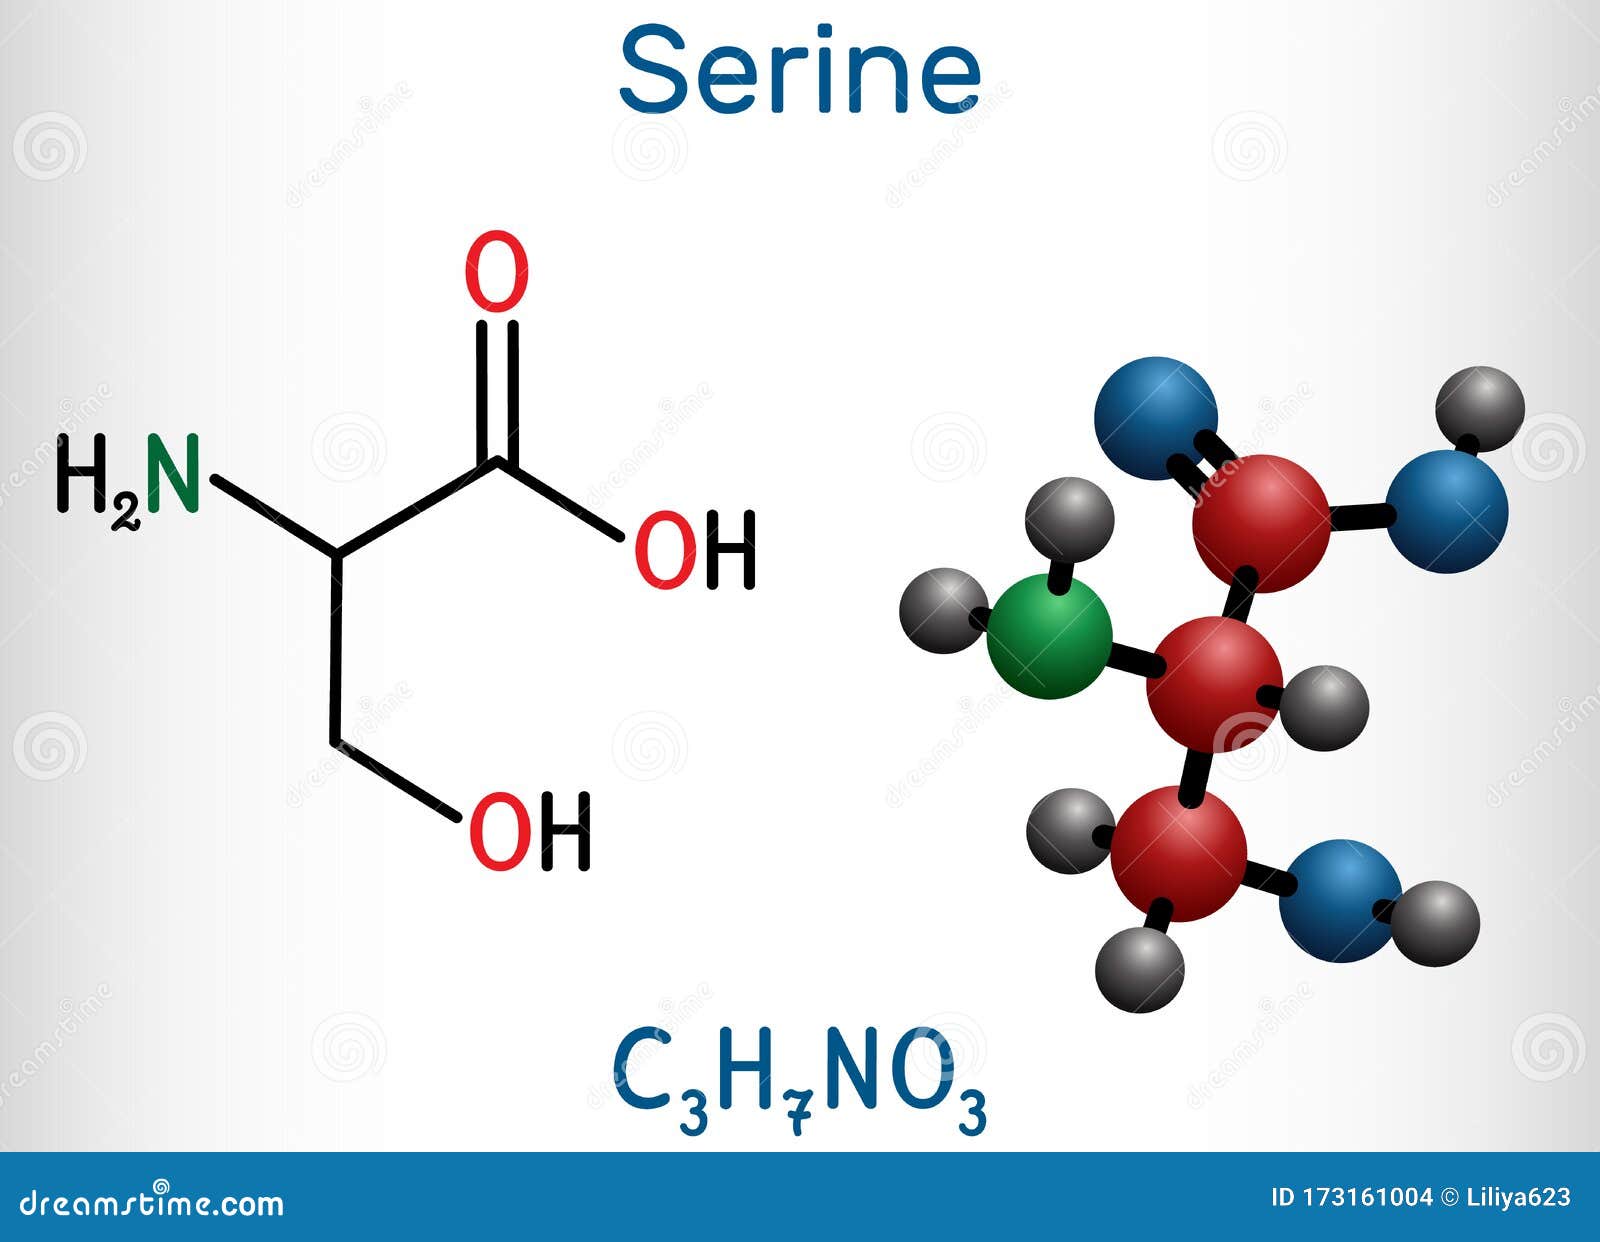 Serine, Ser Amino Acid Molecule. It Is Used In The